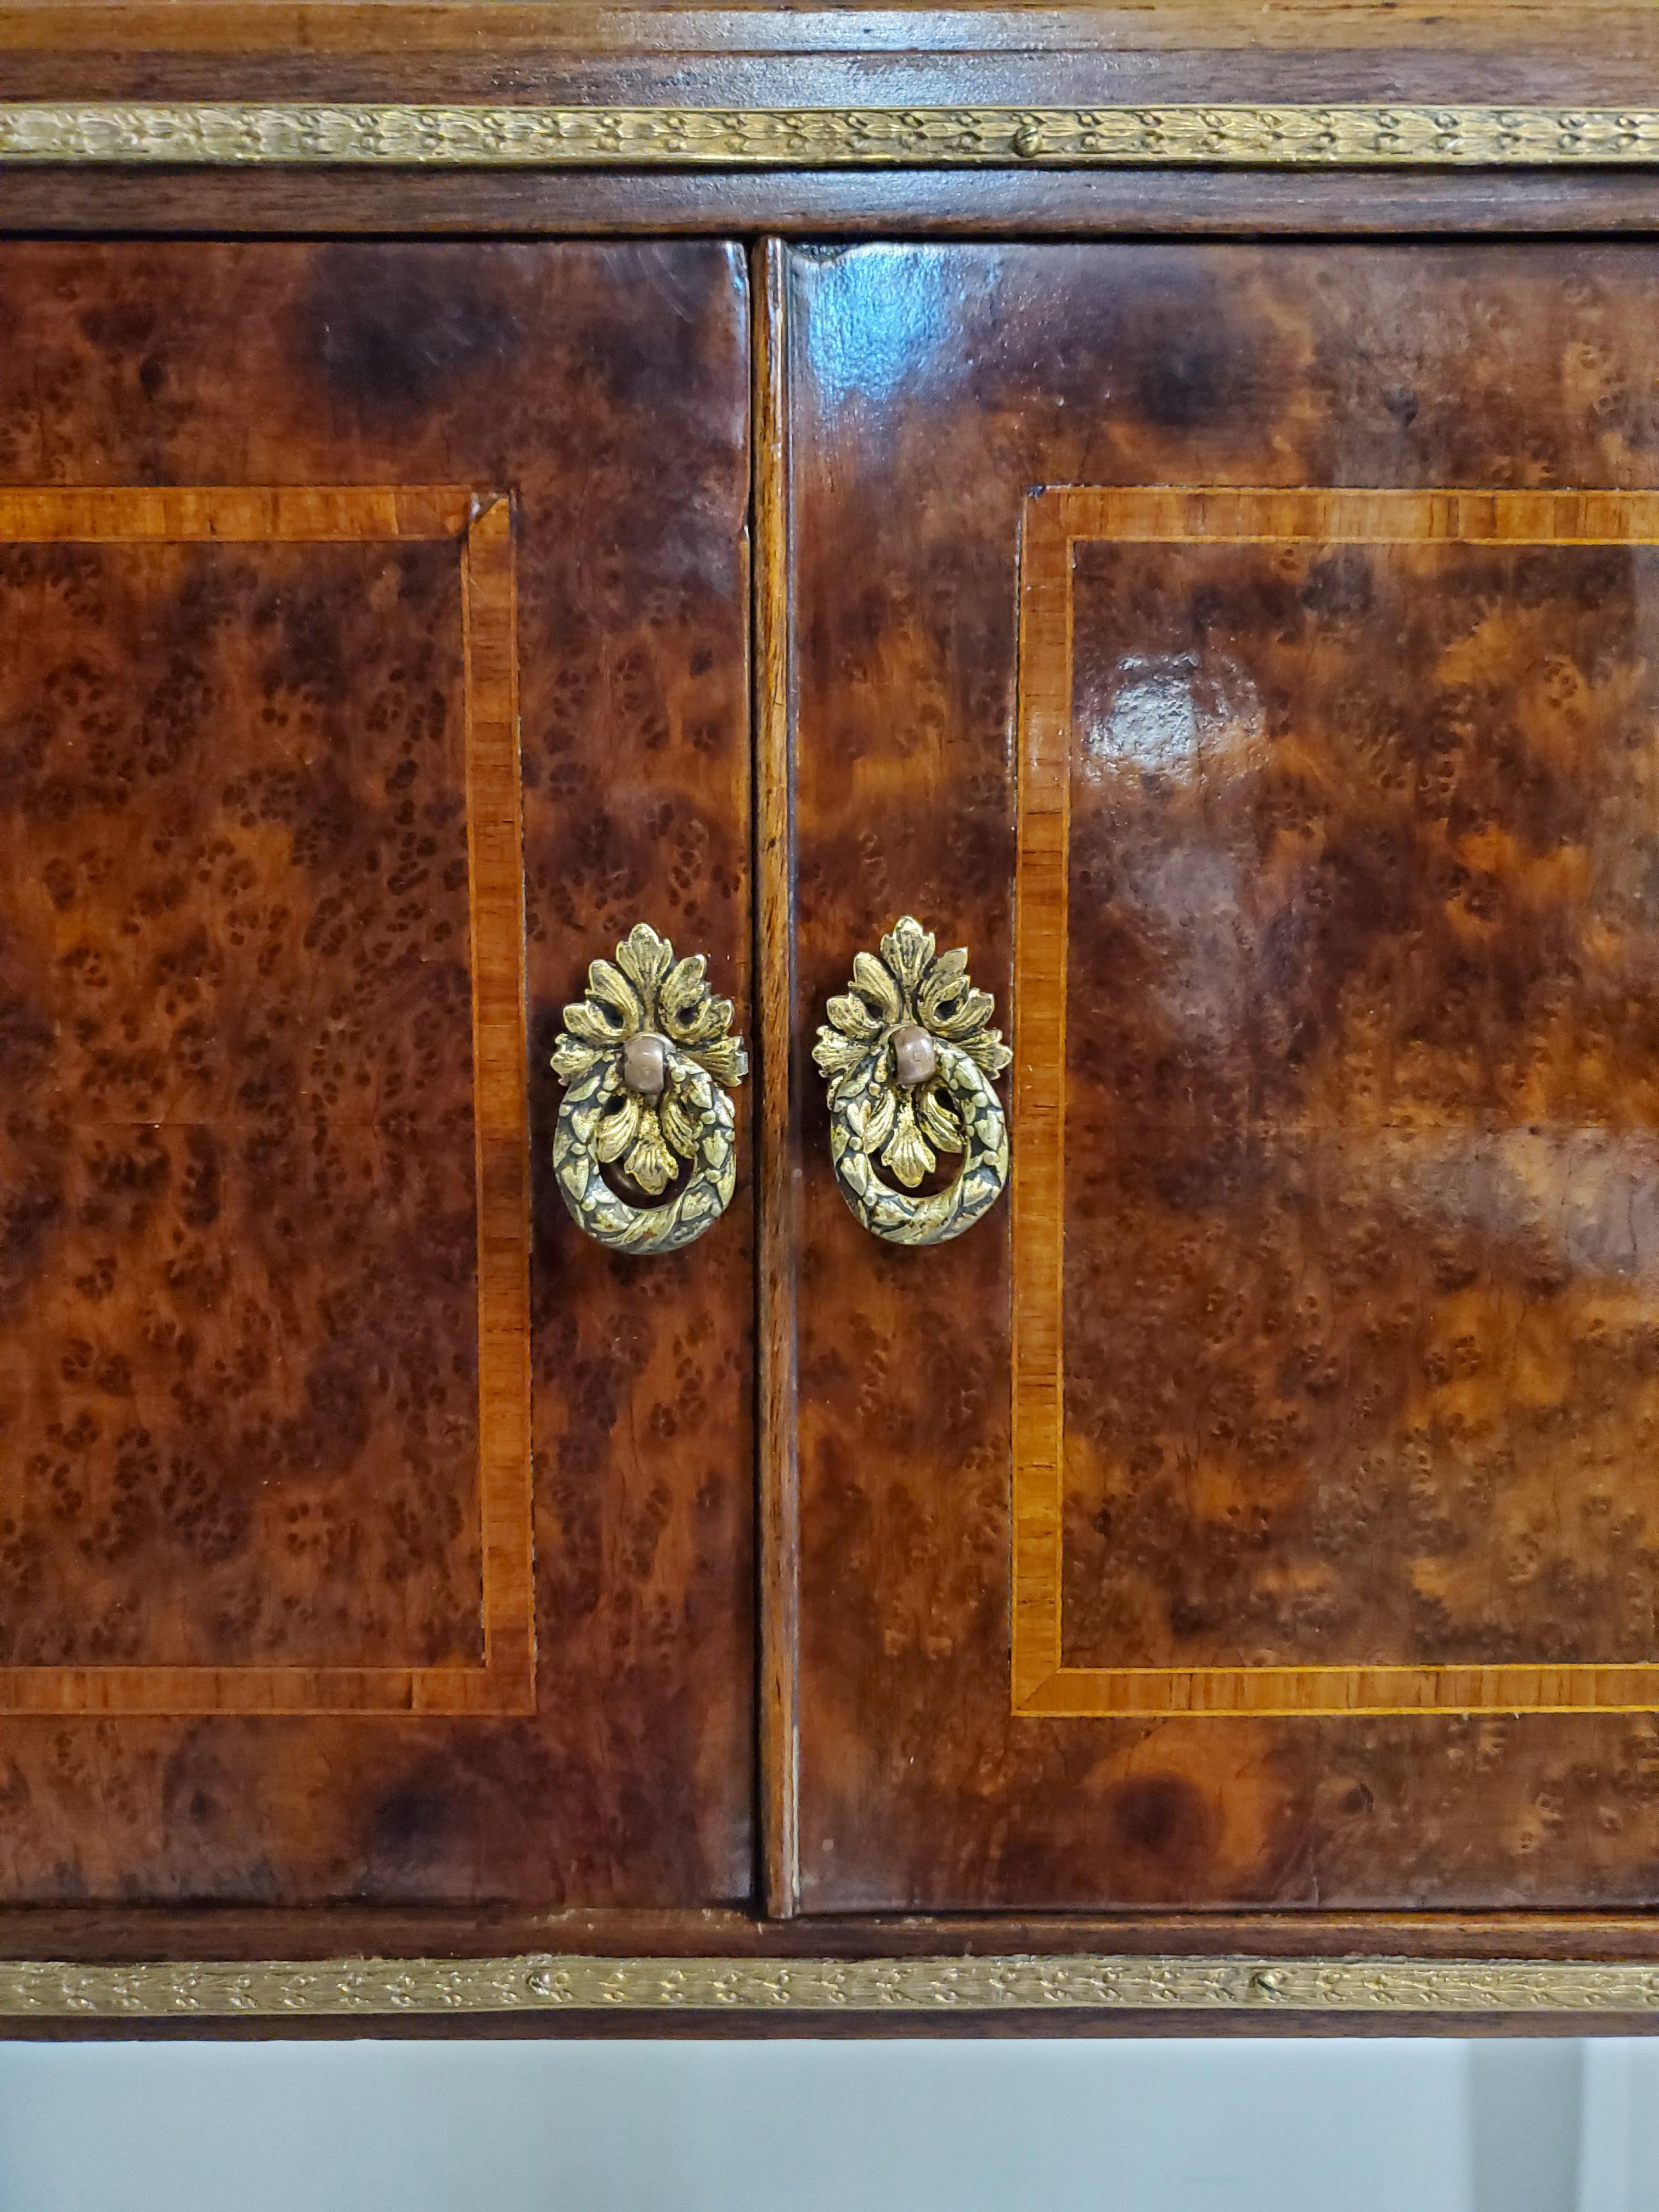 Original Two Door Inlaid Burlwood Cabinet with Bronze Mounts @ 1900 9